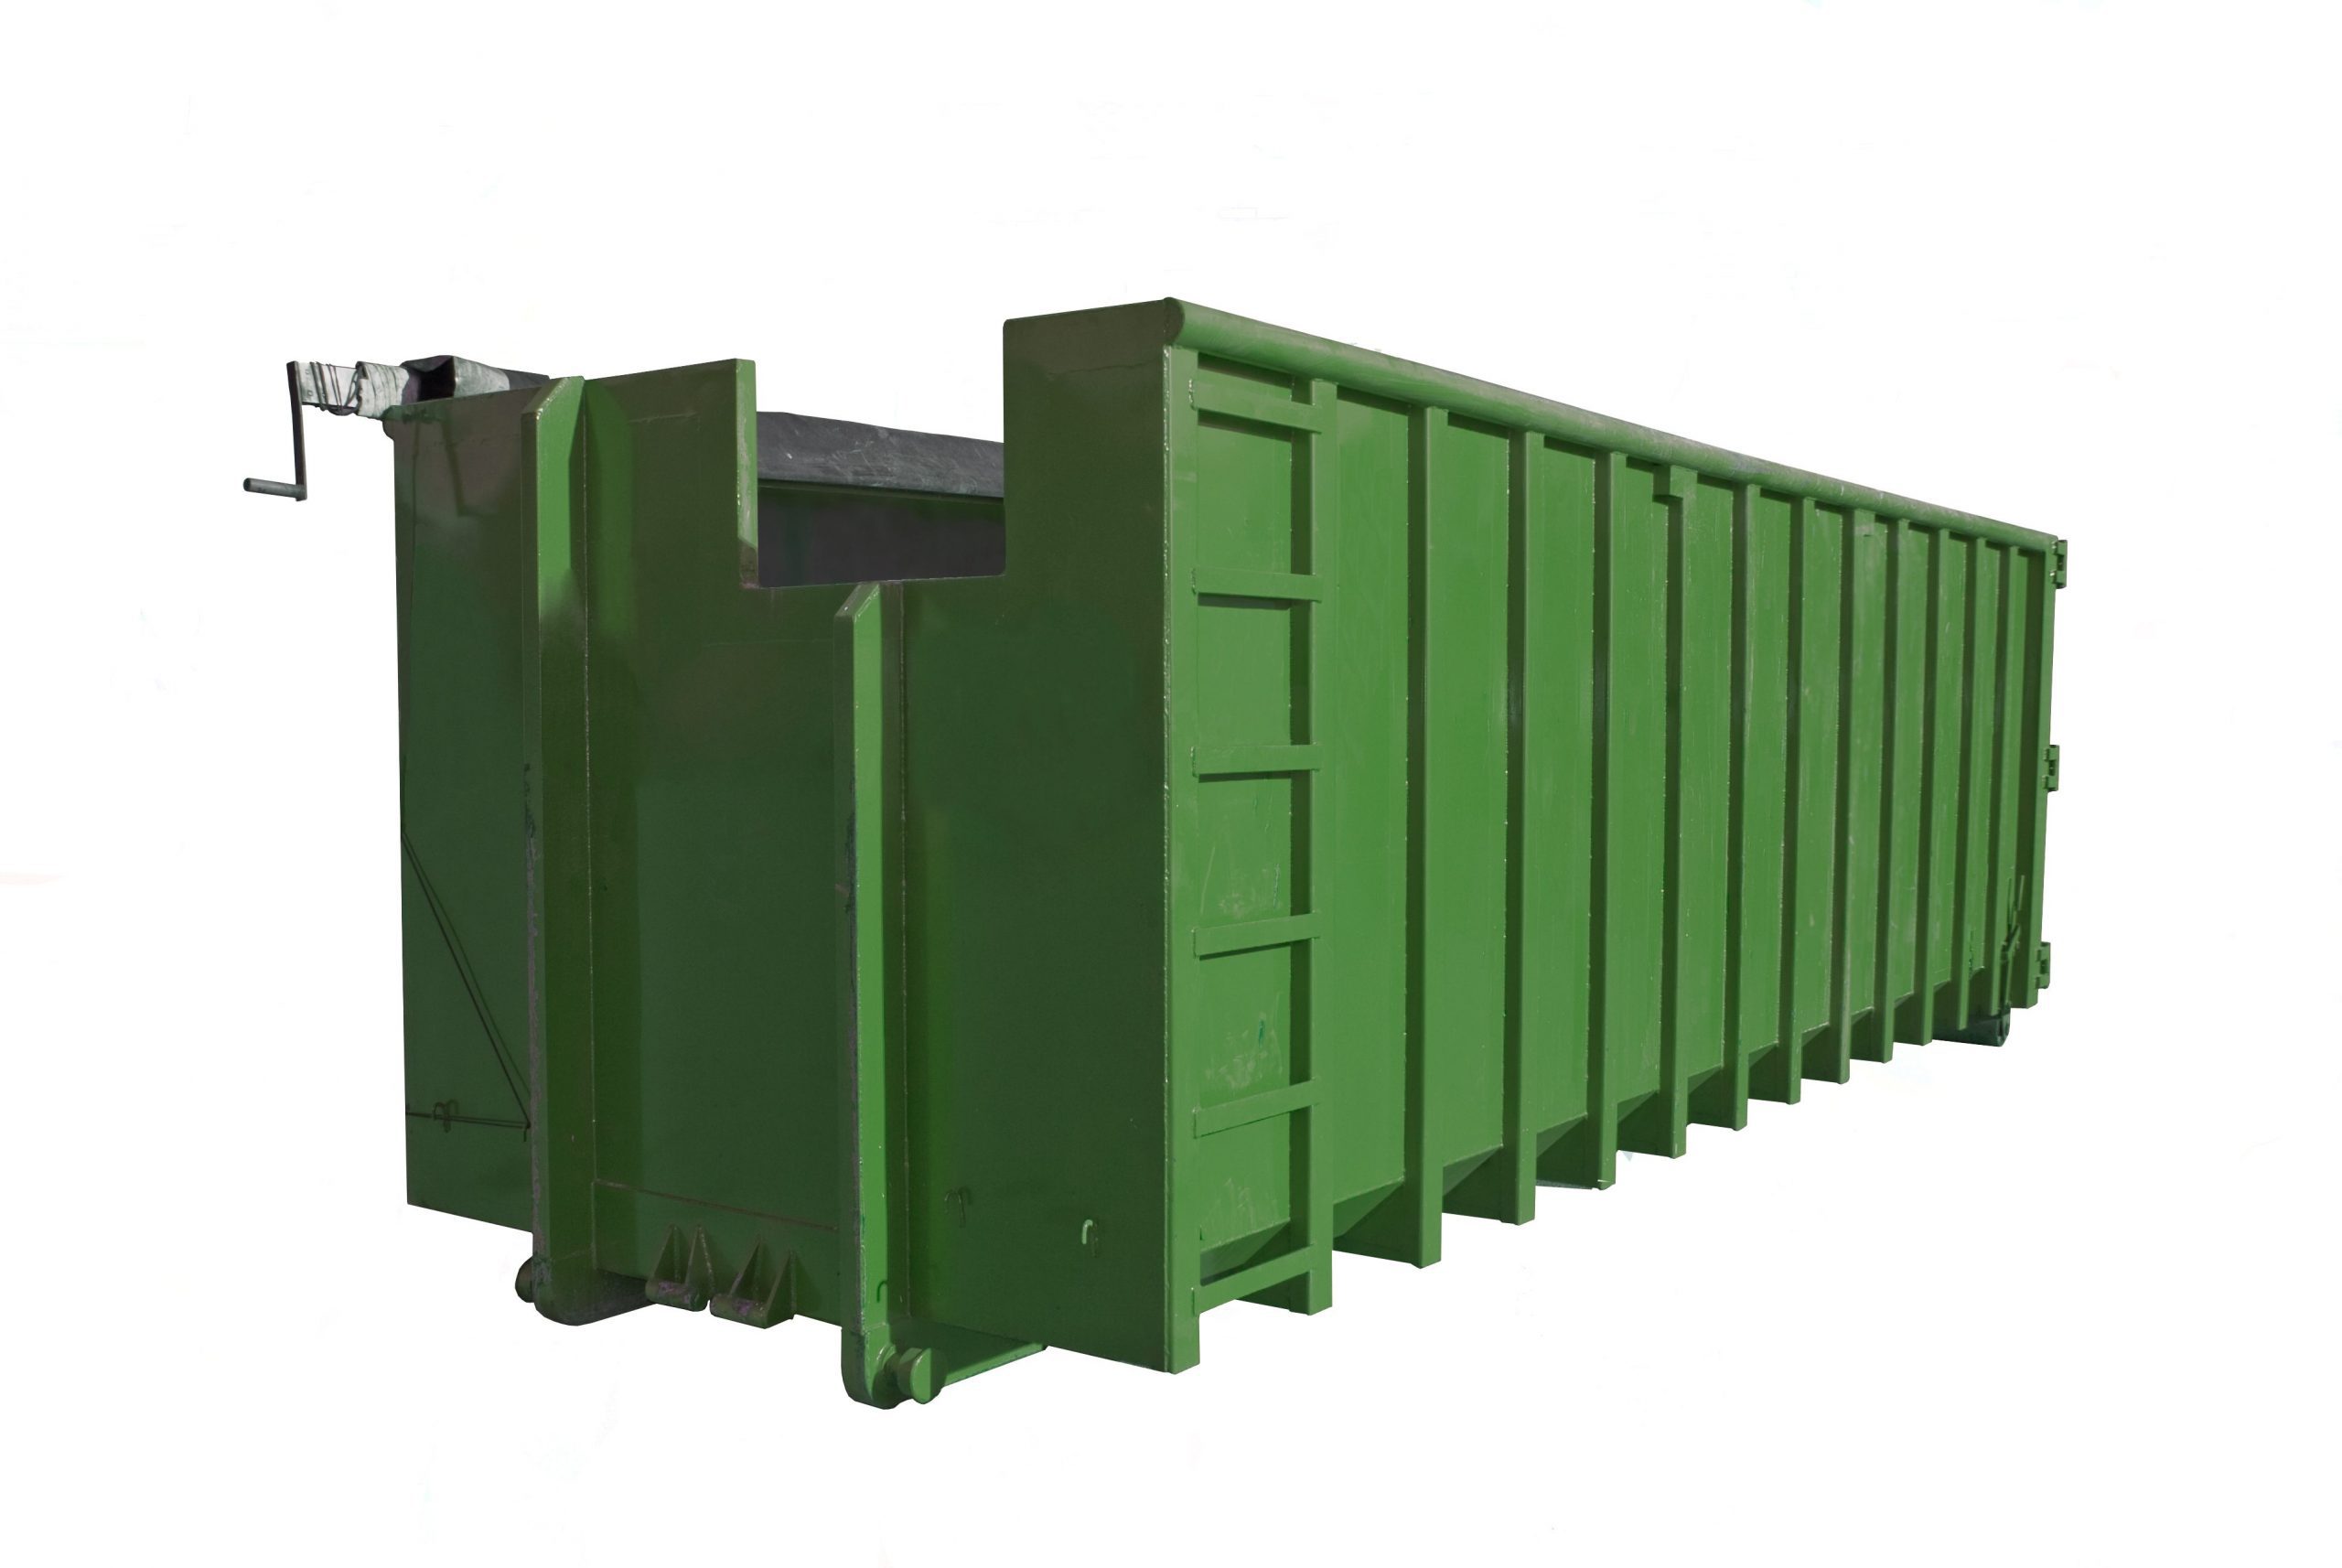 Veroveren Panda Ijver 30 kuub container huren | Recycle-bak.nl